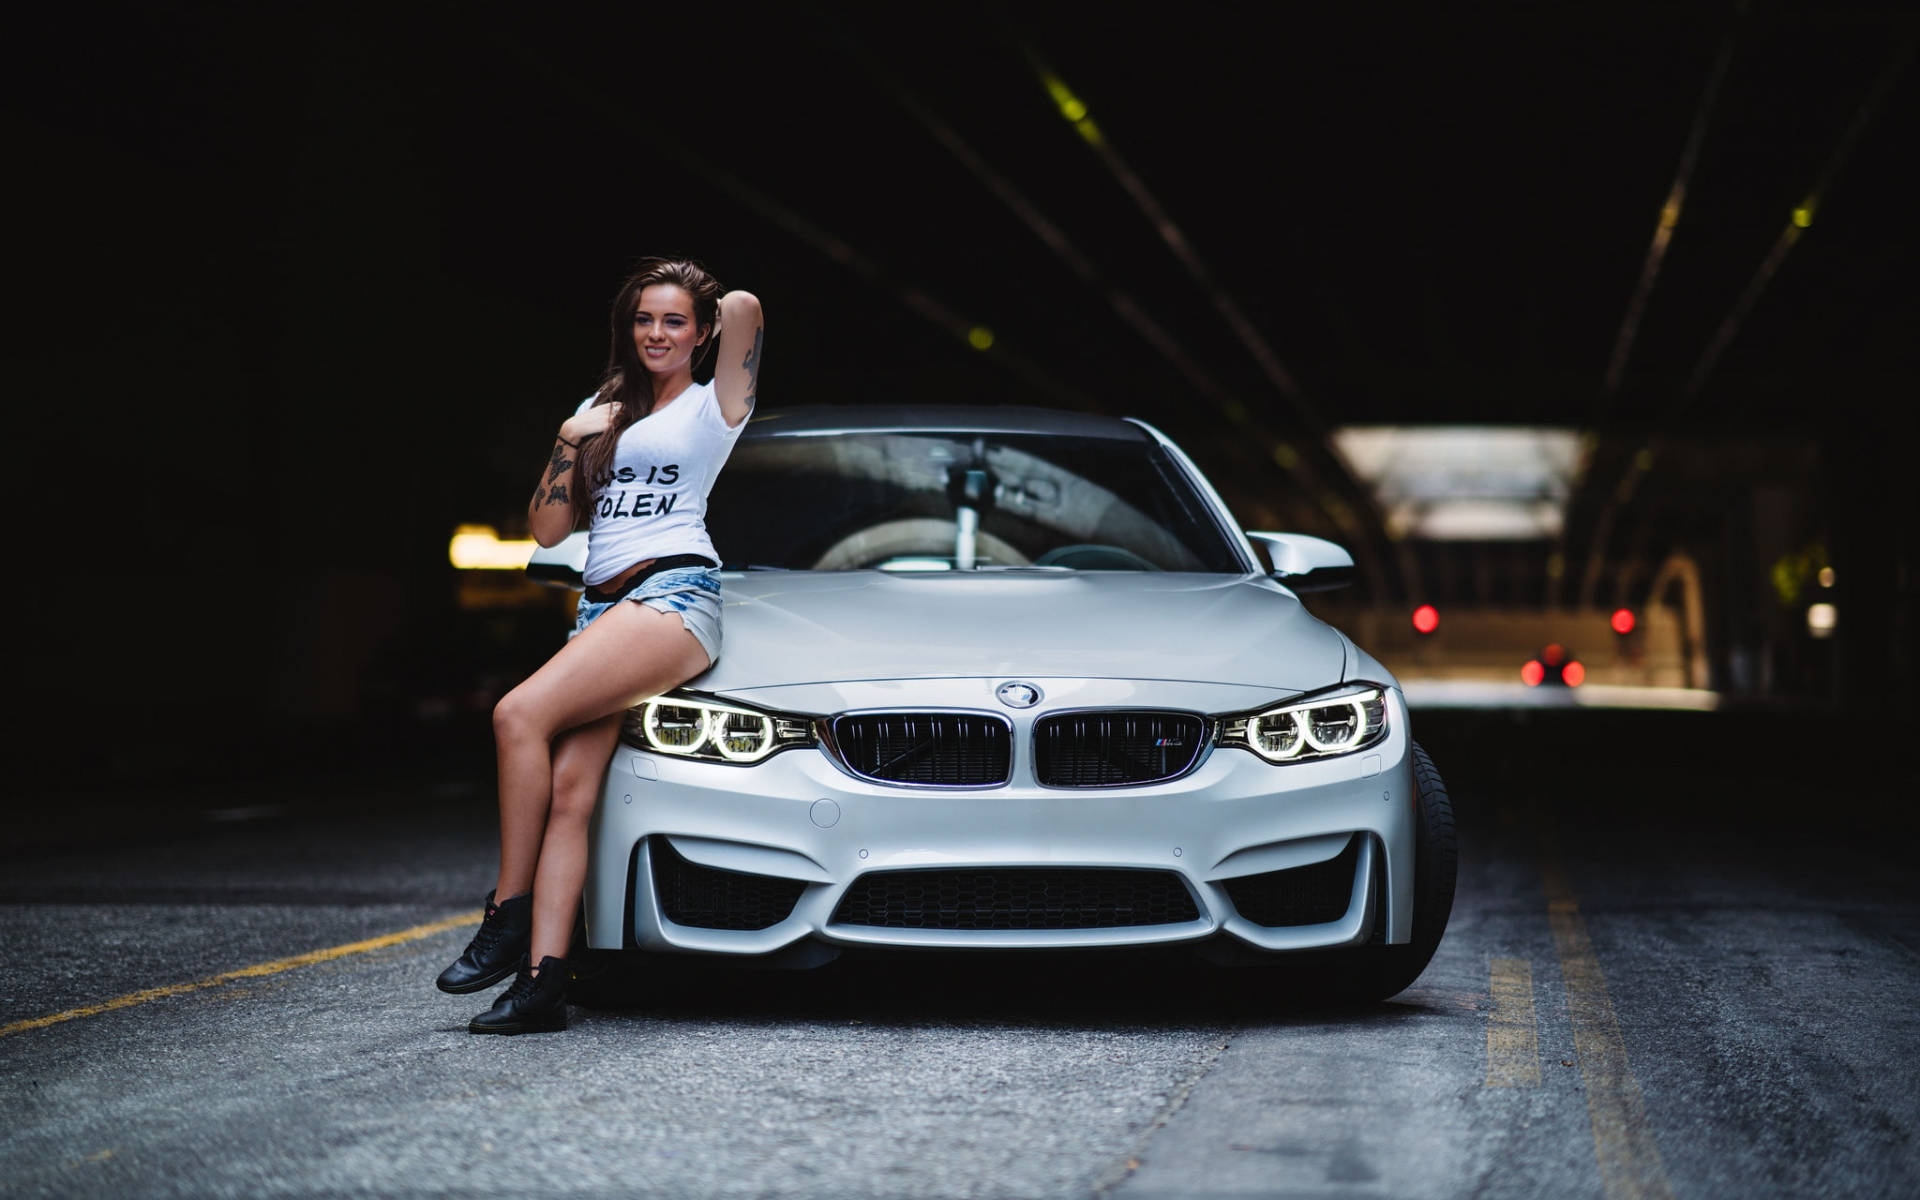 Kvinde med sølv BMW bil på vejen Wallpaper